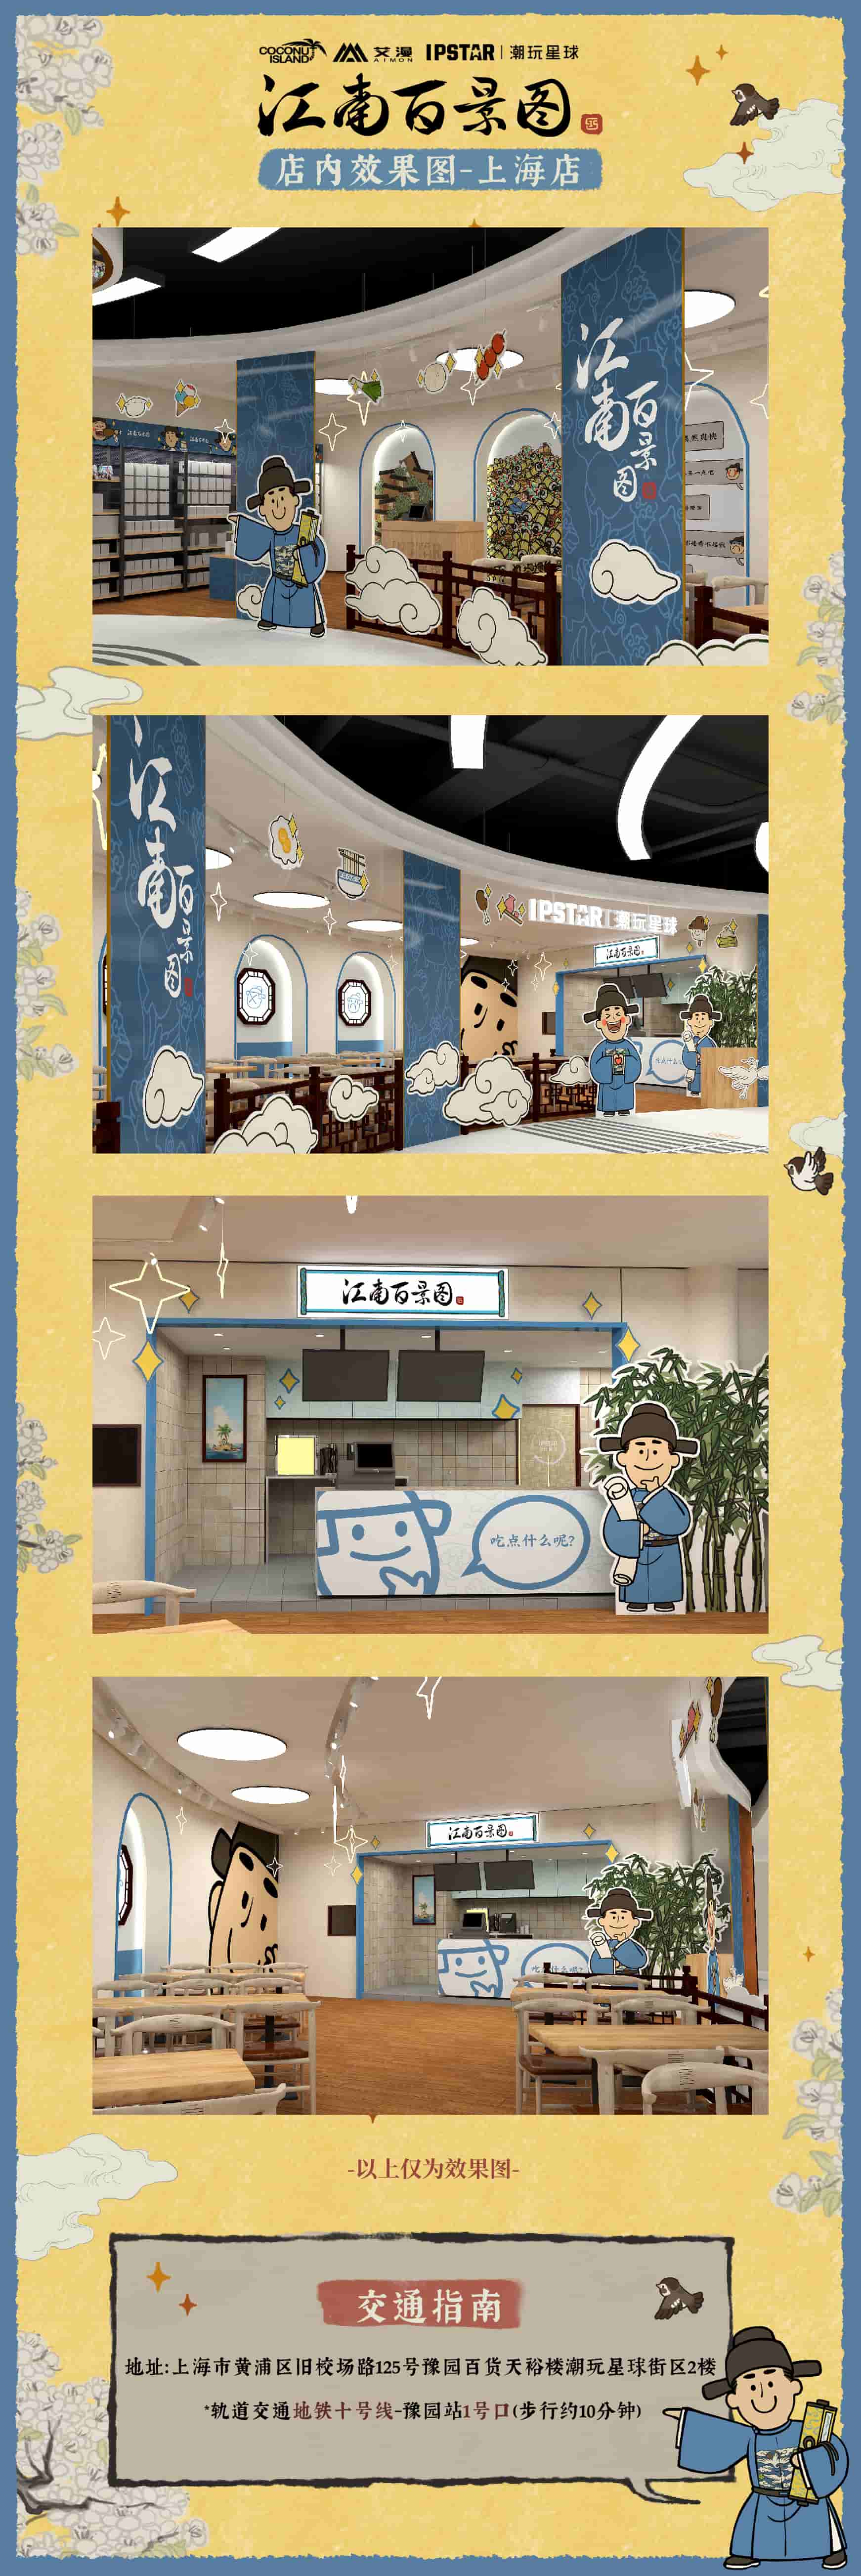 《江南百景图》授权主题餐饮店5月1日上海开业！饮店月日活动情报全公开